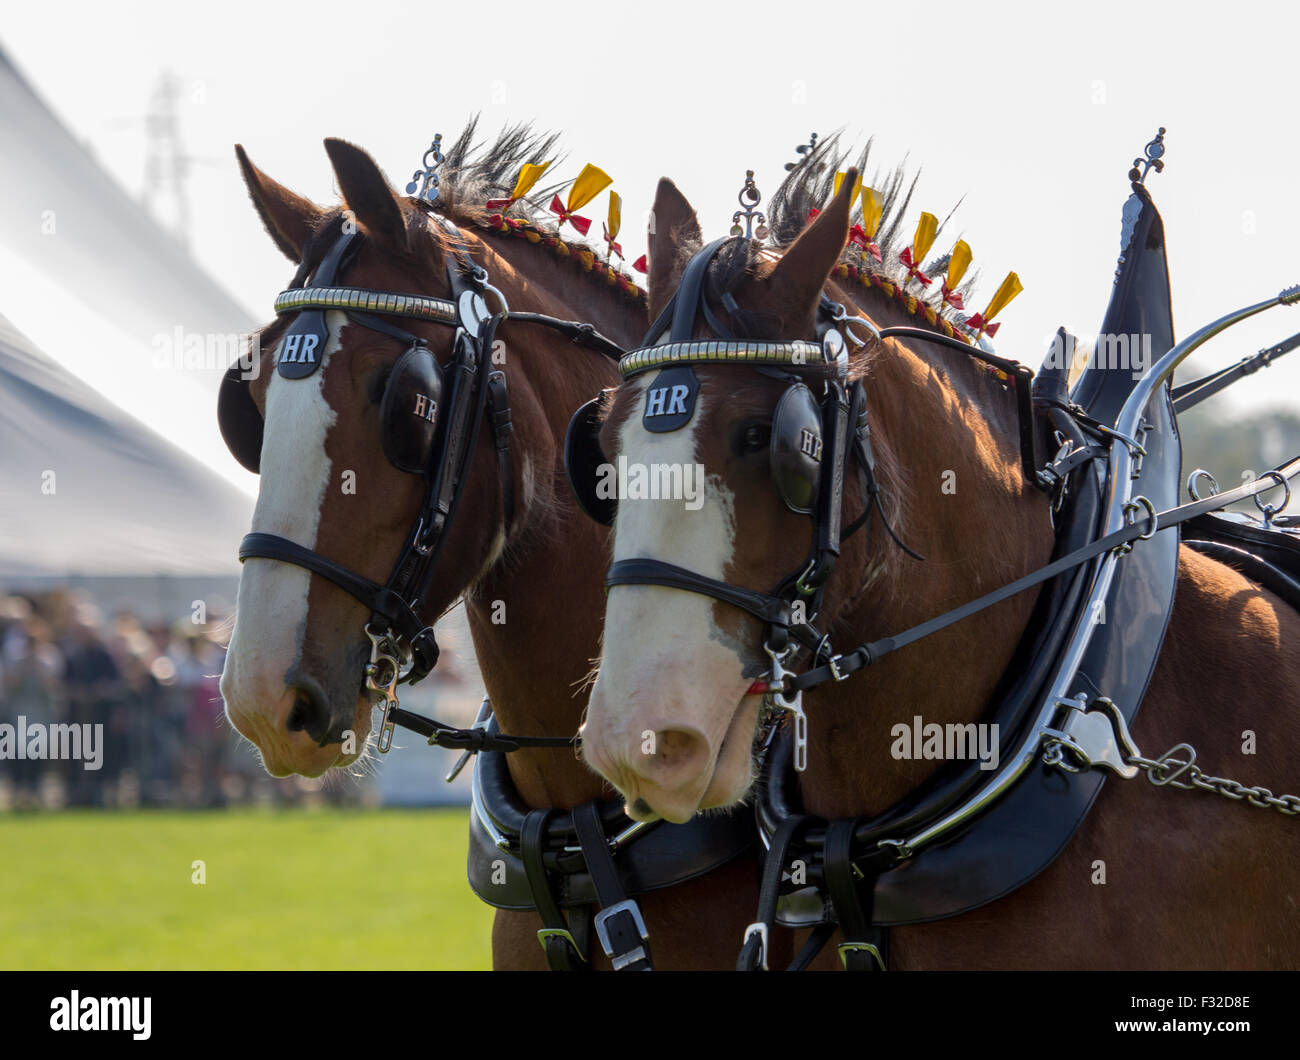 Deux chevaux Clydesdale tirant un chariot au comté de Westmorland Show 2015 Banque D'Images